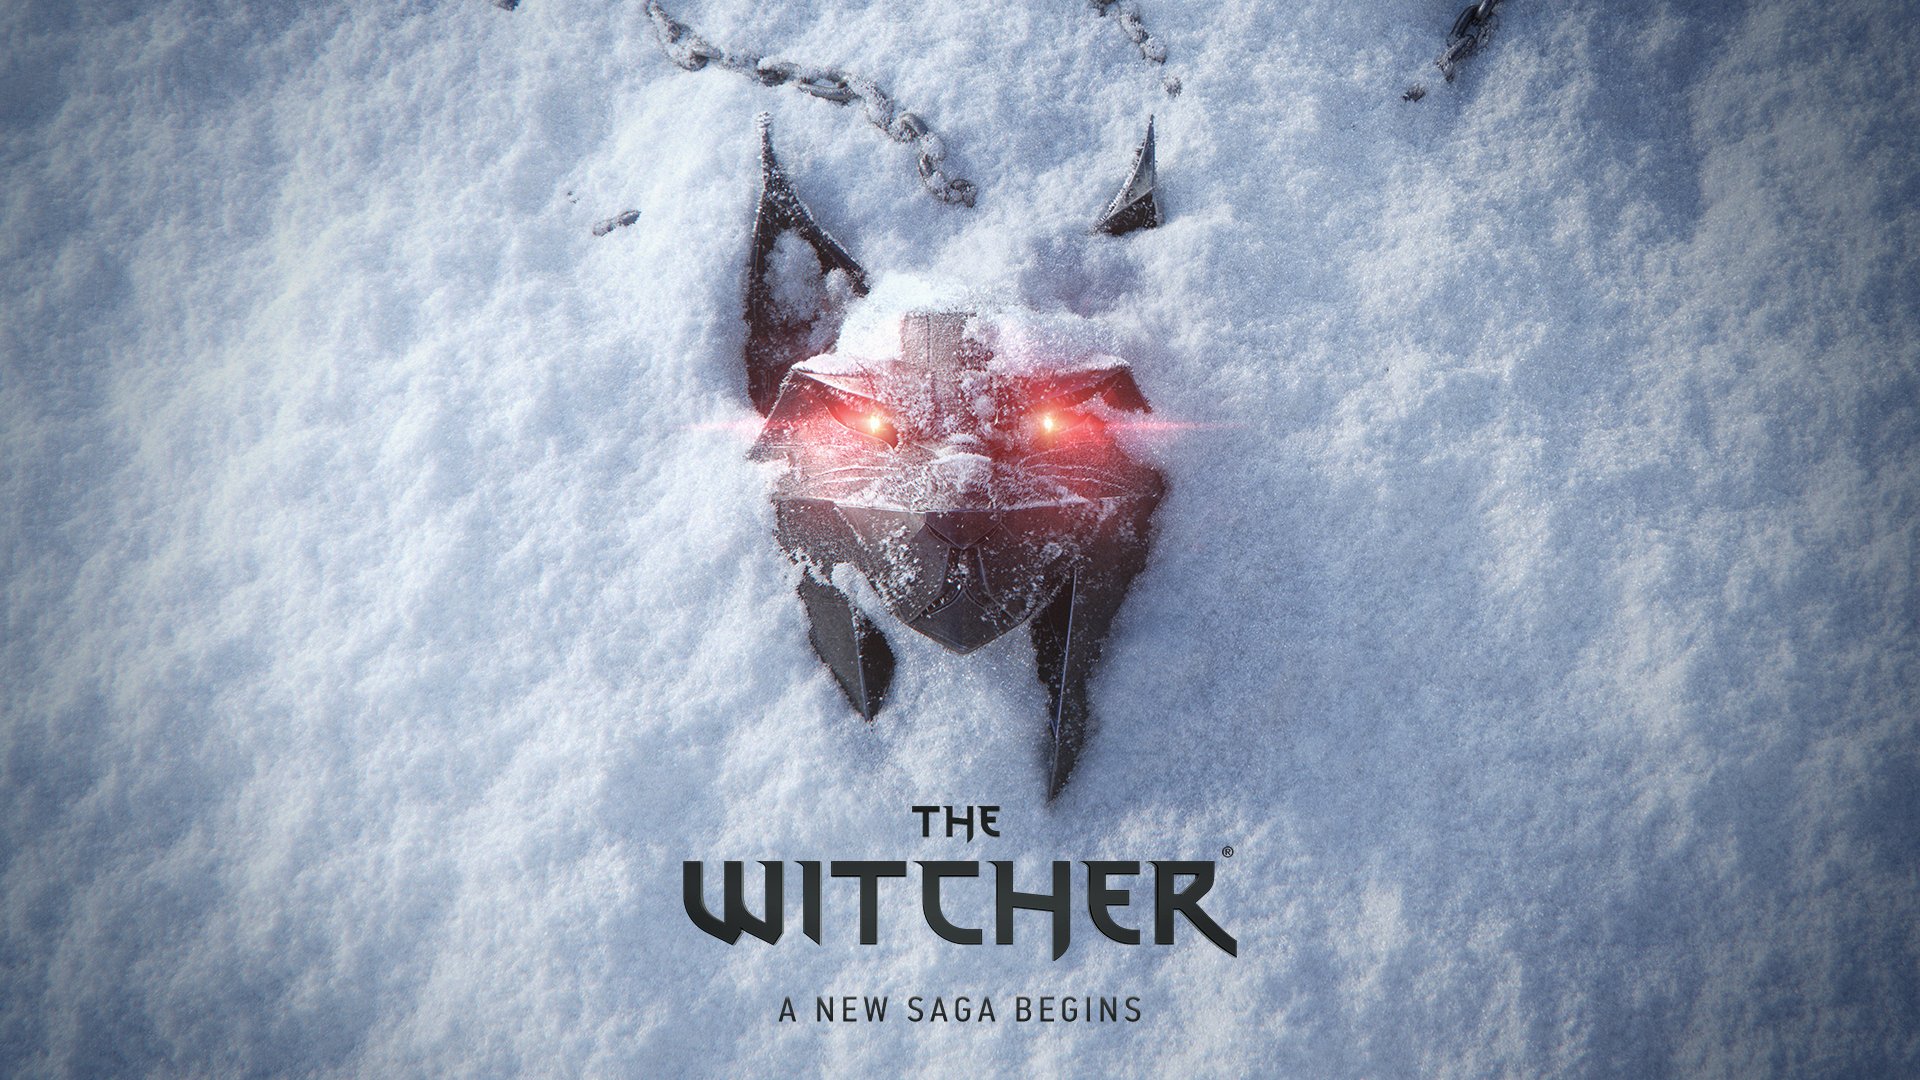 Mer än 400 CD Projekt RED-utvecklare arbetar med The Witcher 4, men projektet är fortfarande i förproduktion